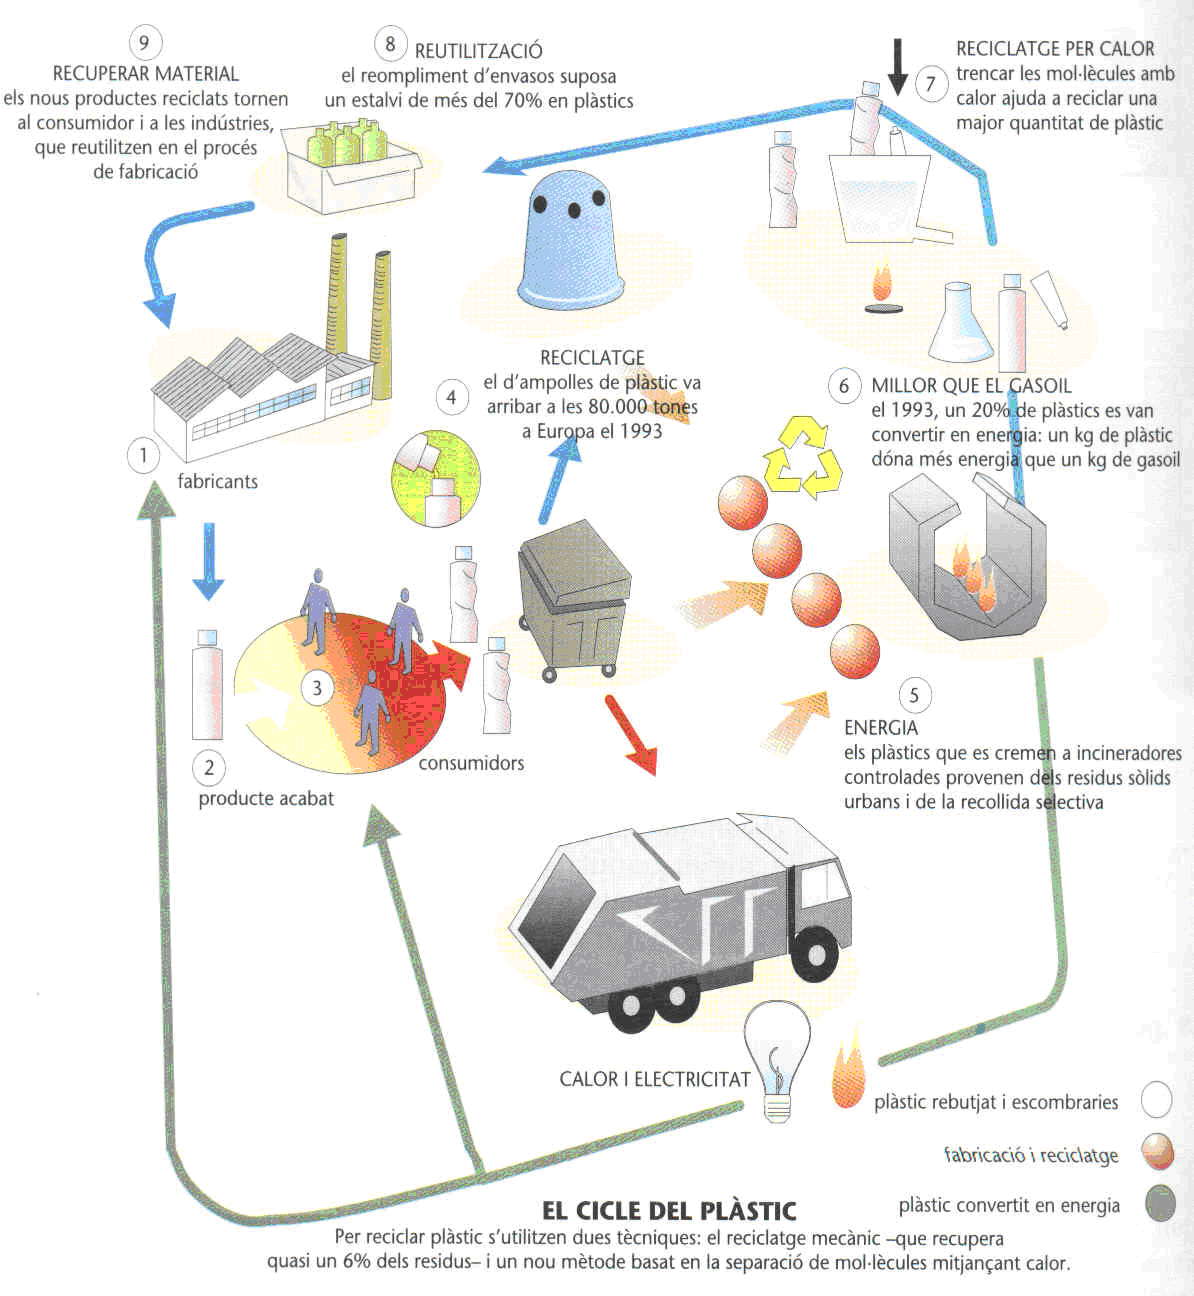 procés de reciclatge del plàstic